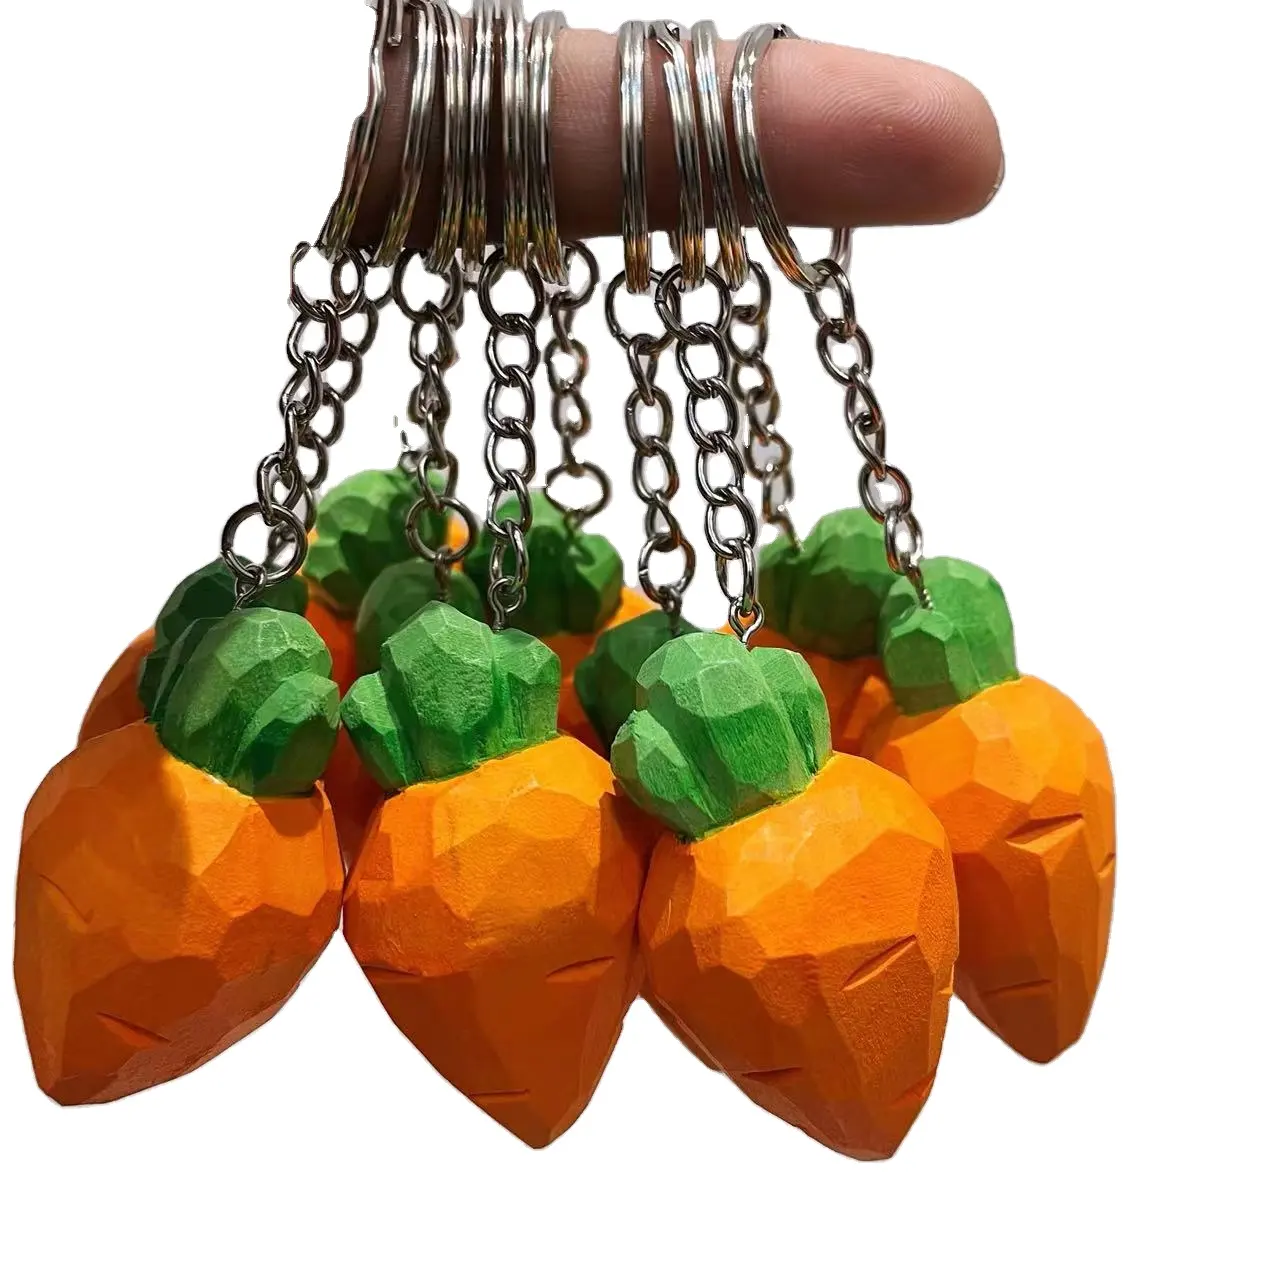 Geschnitzte Karotten holz Schlüssel anhänger für Bastel partys Frau und Mann Geschenke